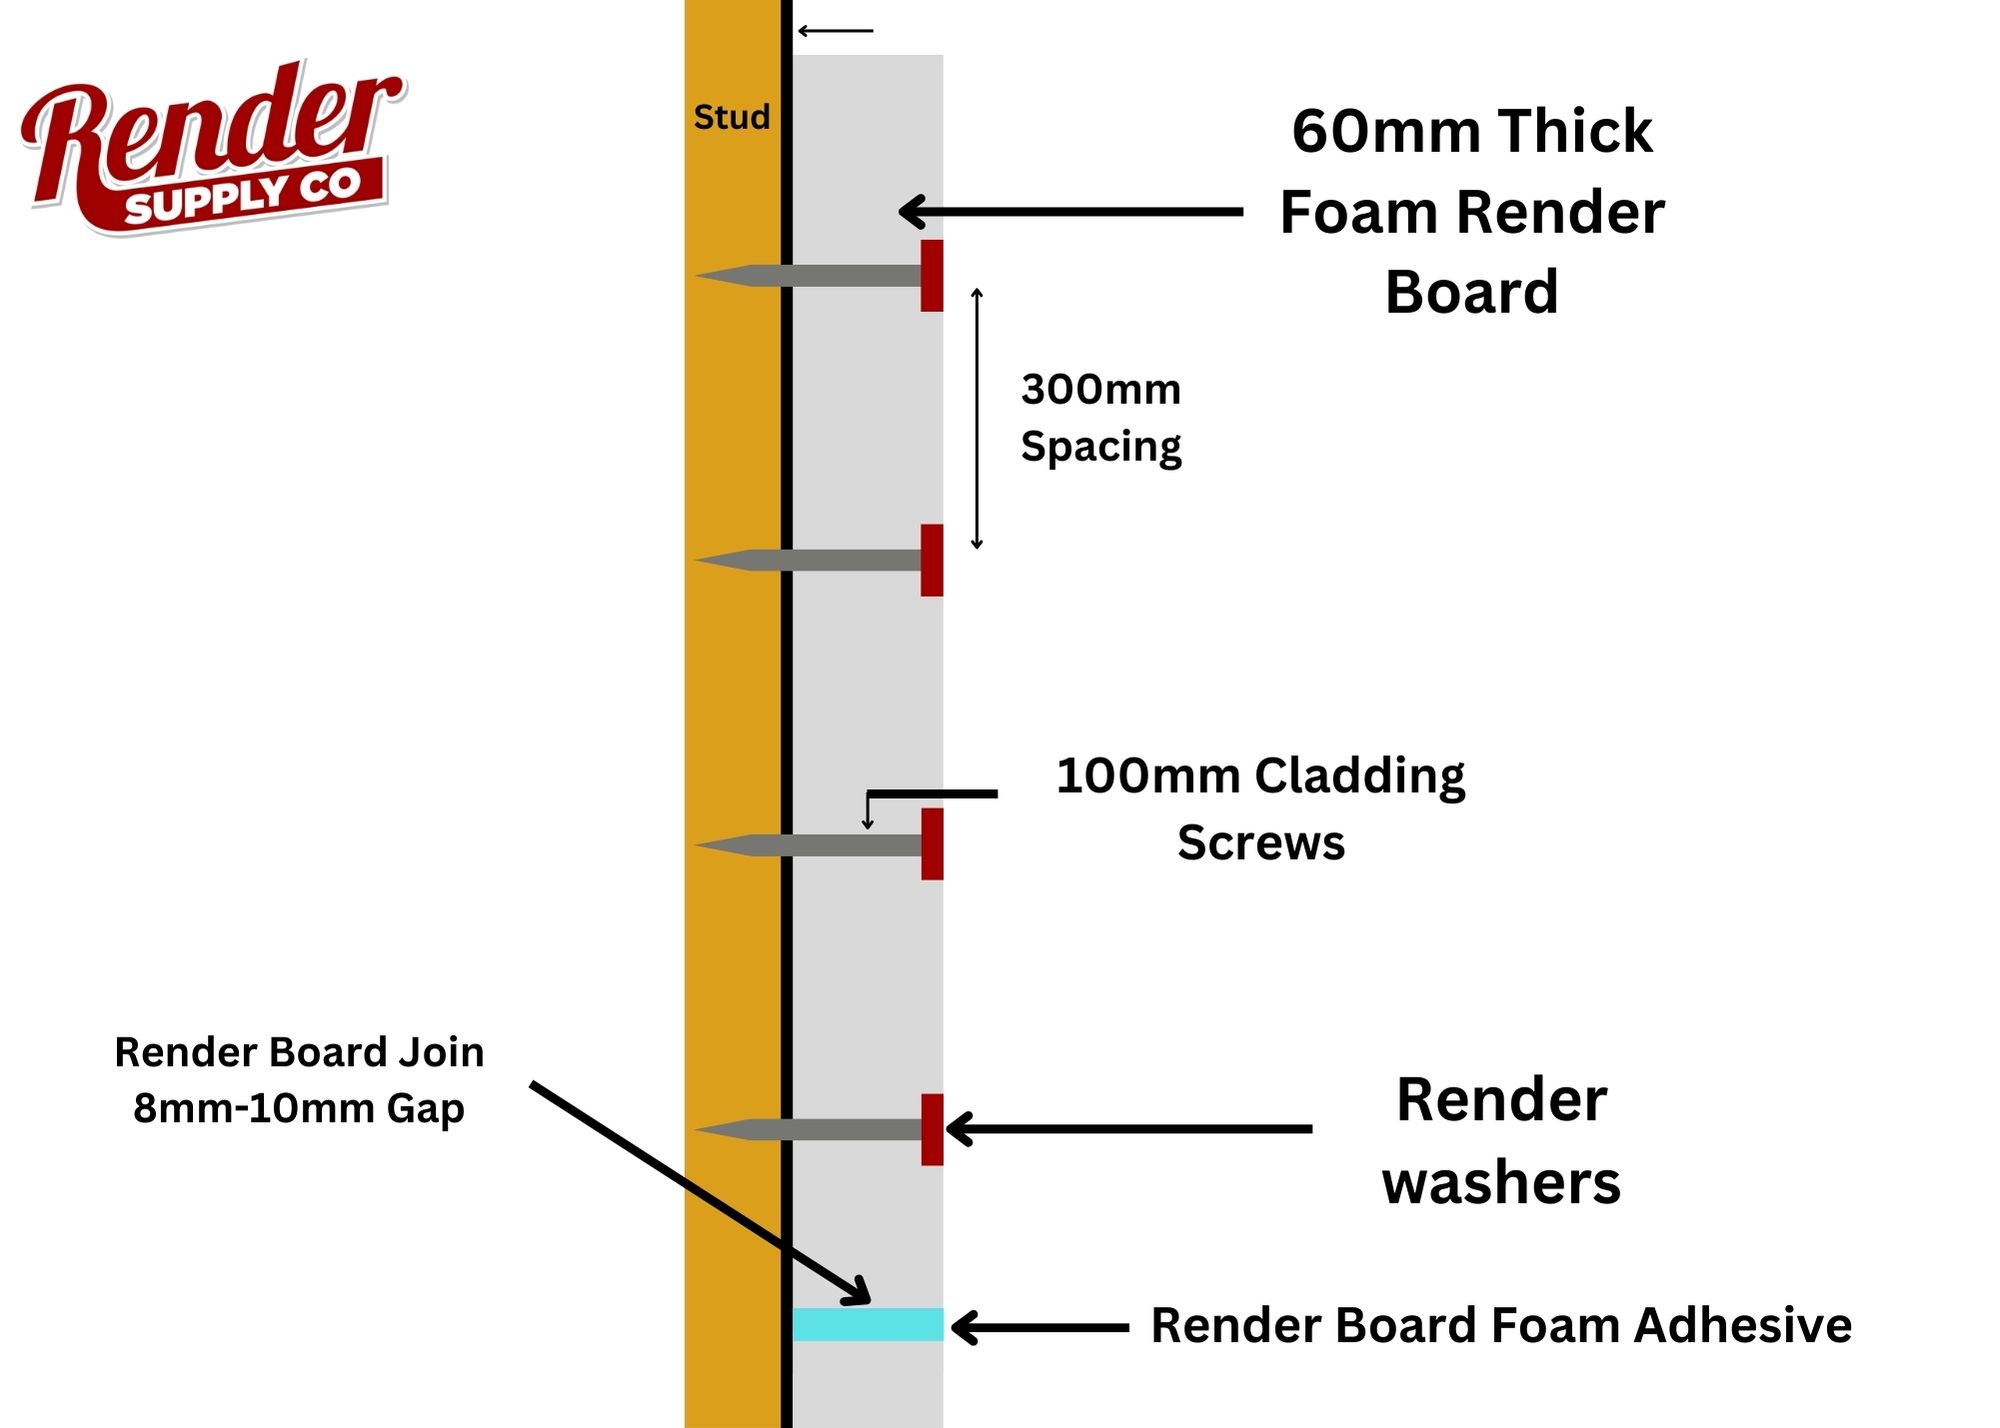 50mm Render Board